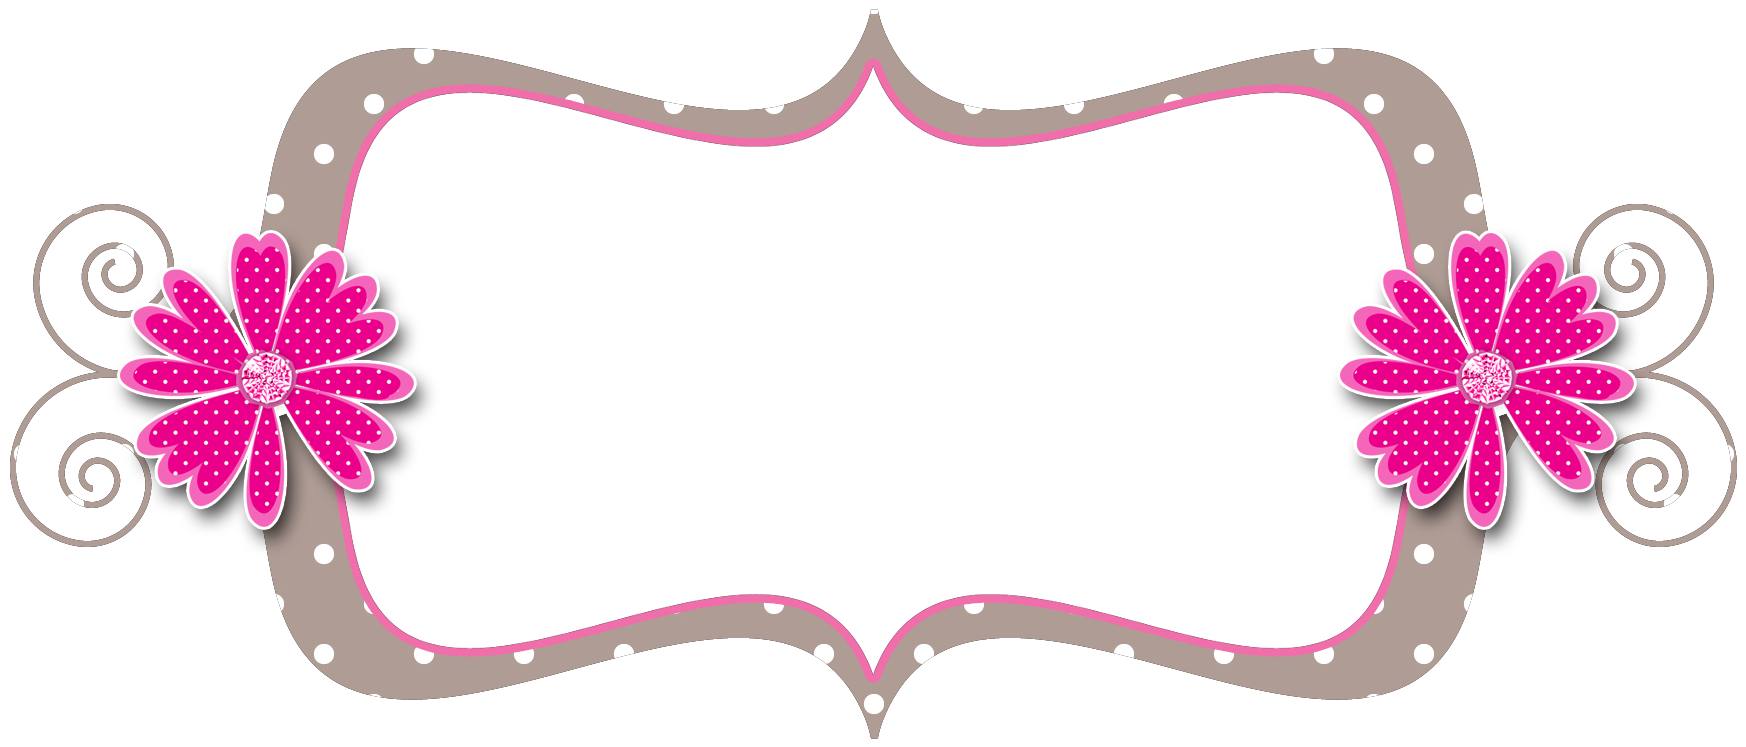 Curly Frame Polka Dot Pink Beige - Polka Dot (1800x1140)